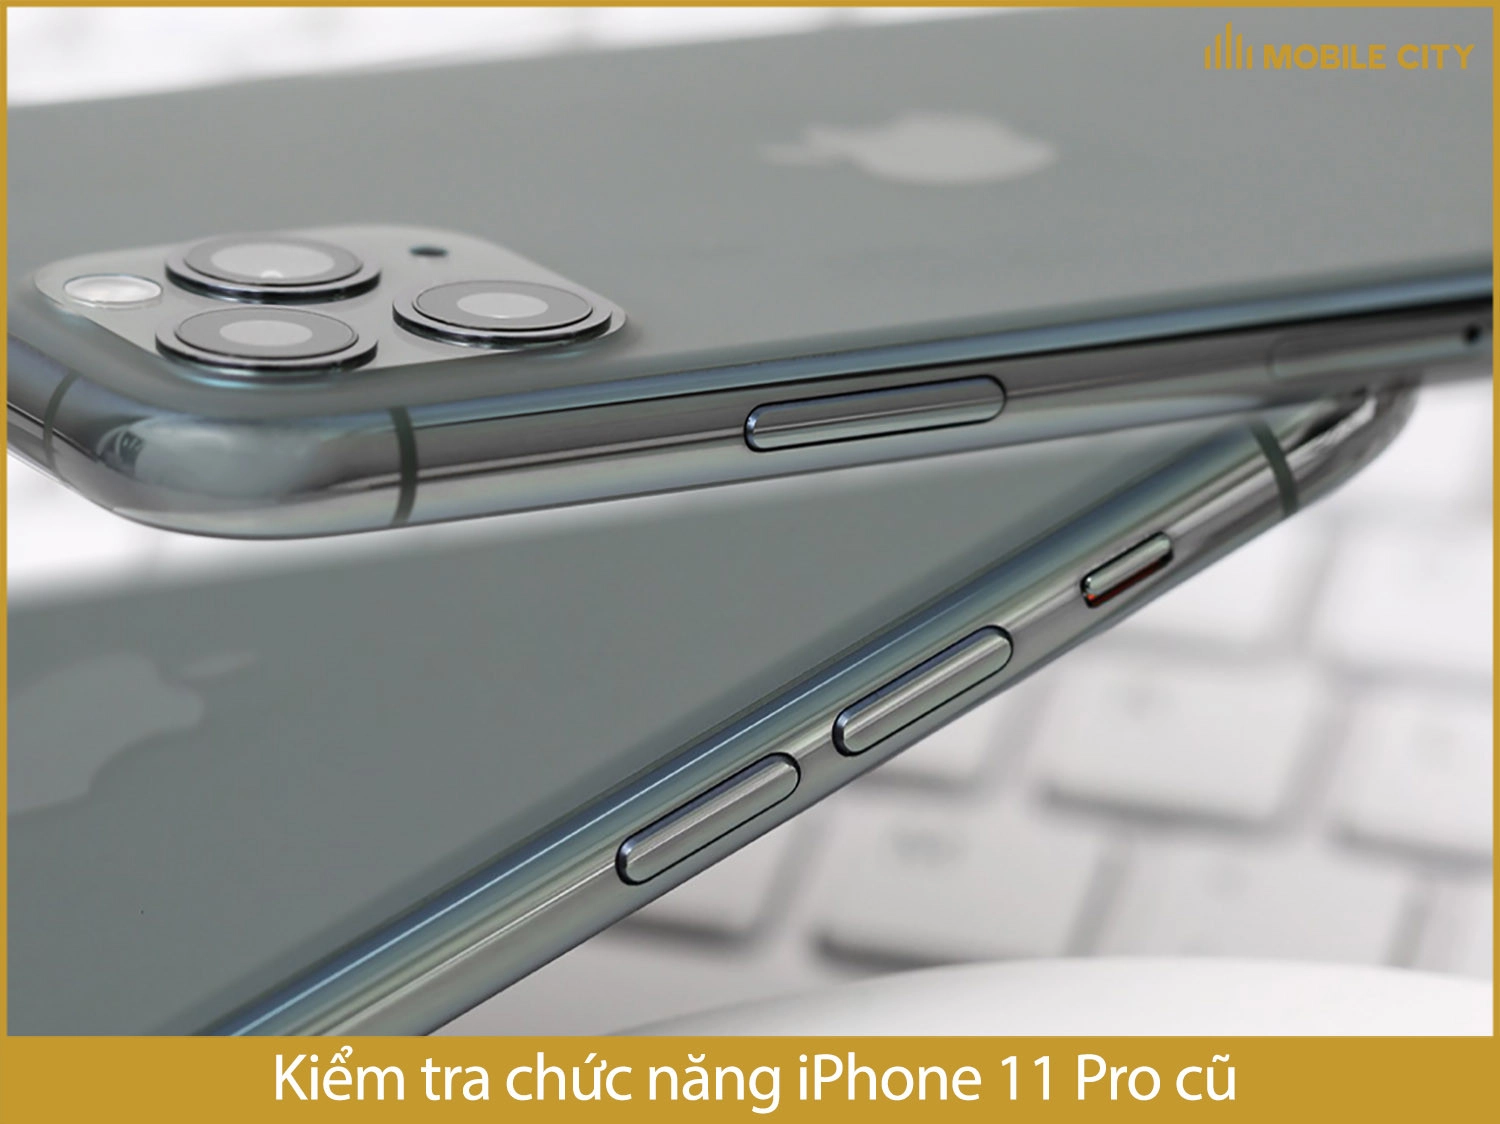 Kiểm tra chức năng iPhone 11 Pro cũ